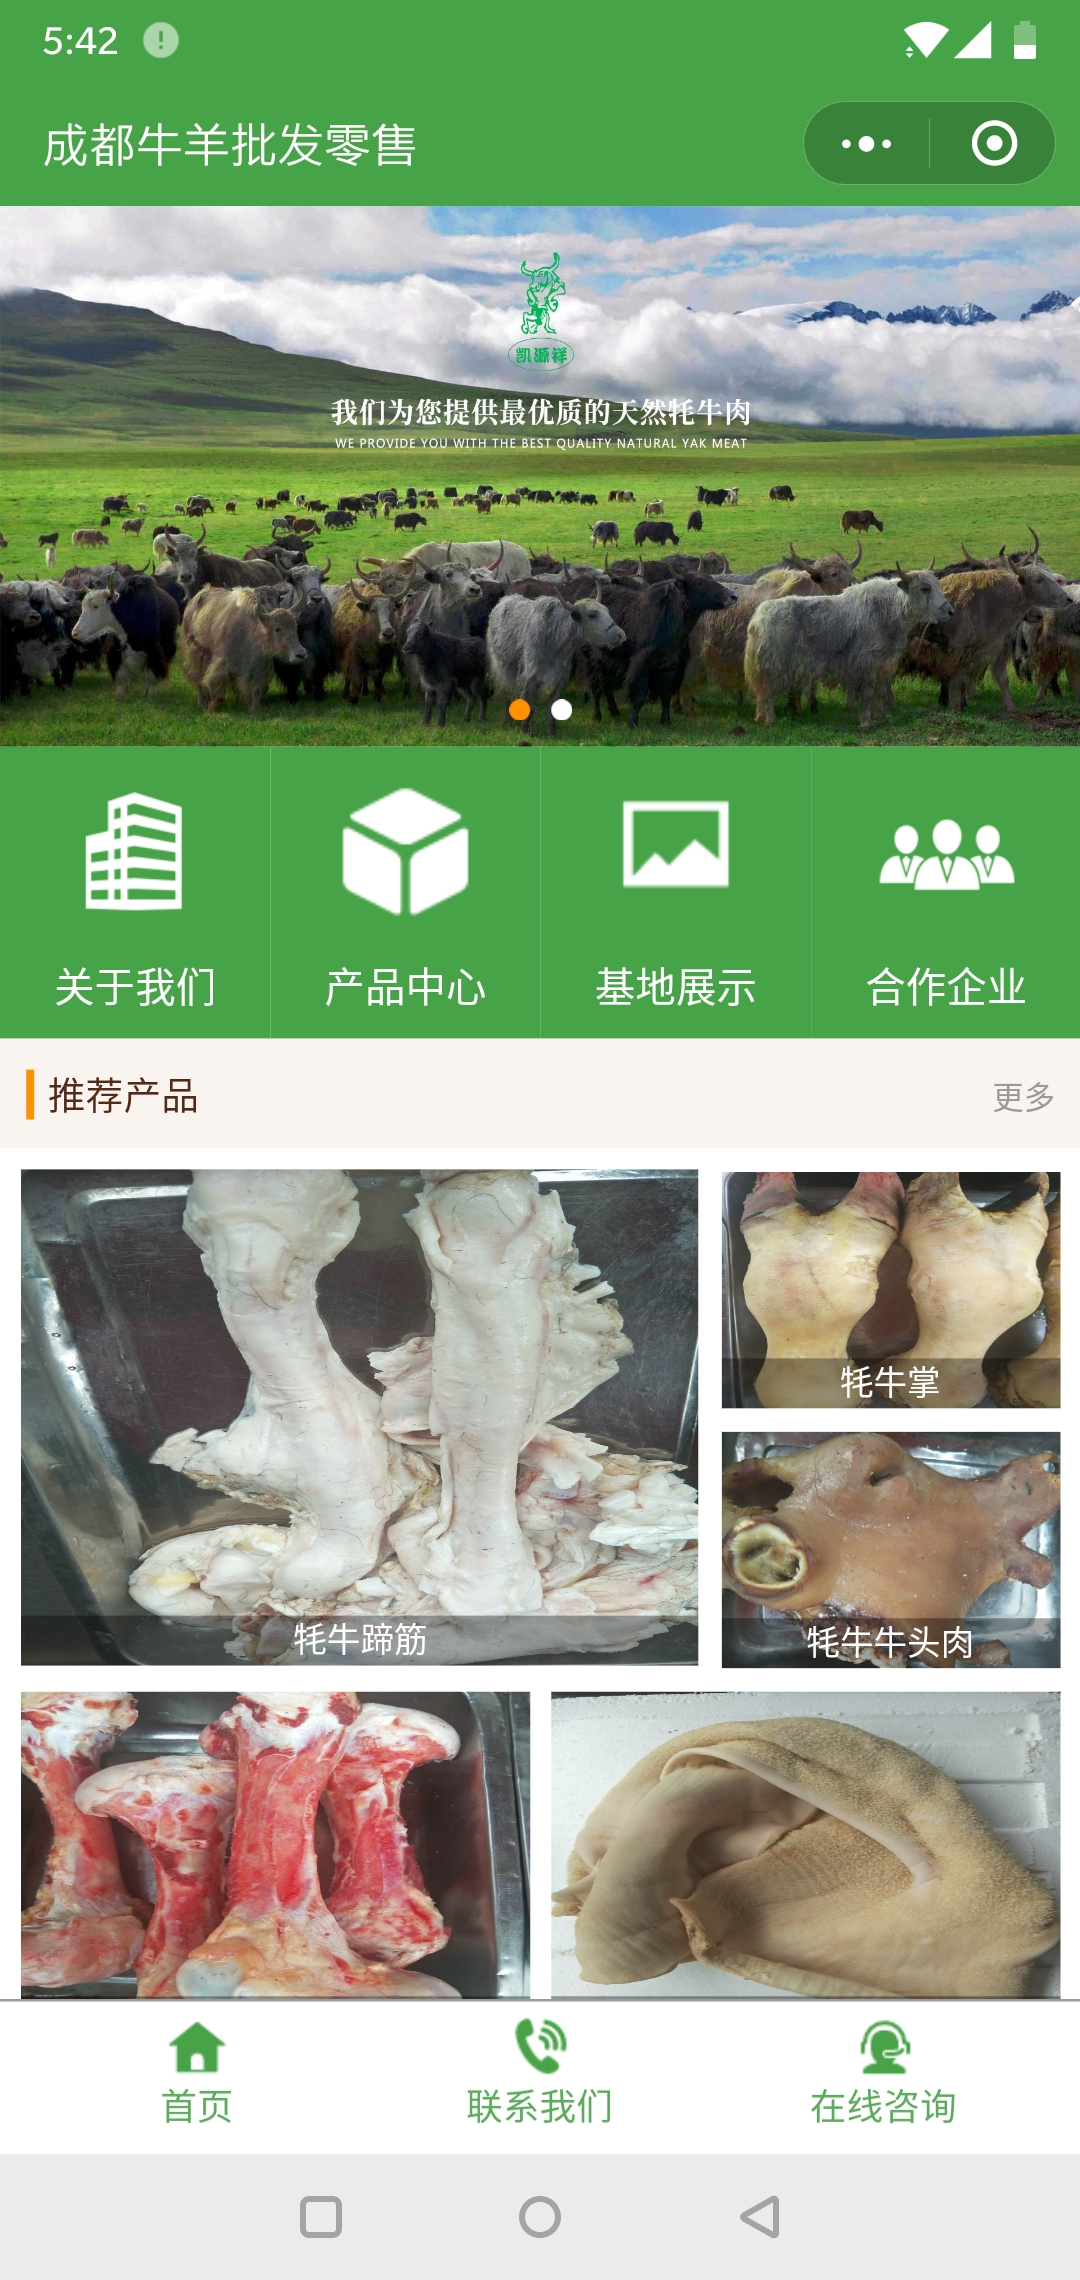 农产品绿色成都-成都牛羊批发零售官网小程序高级版.jpg